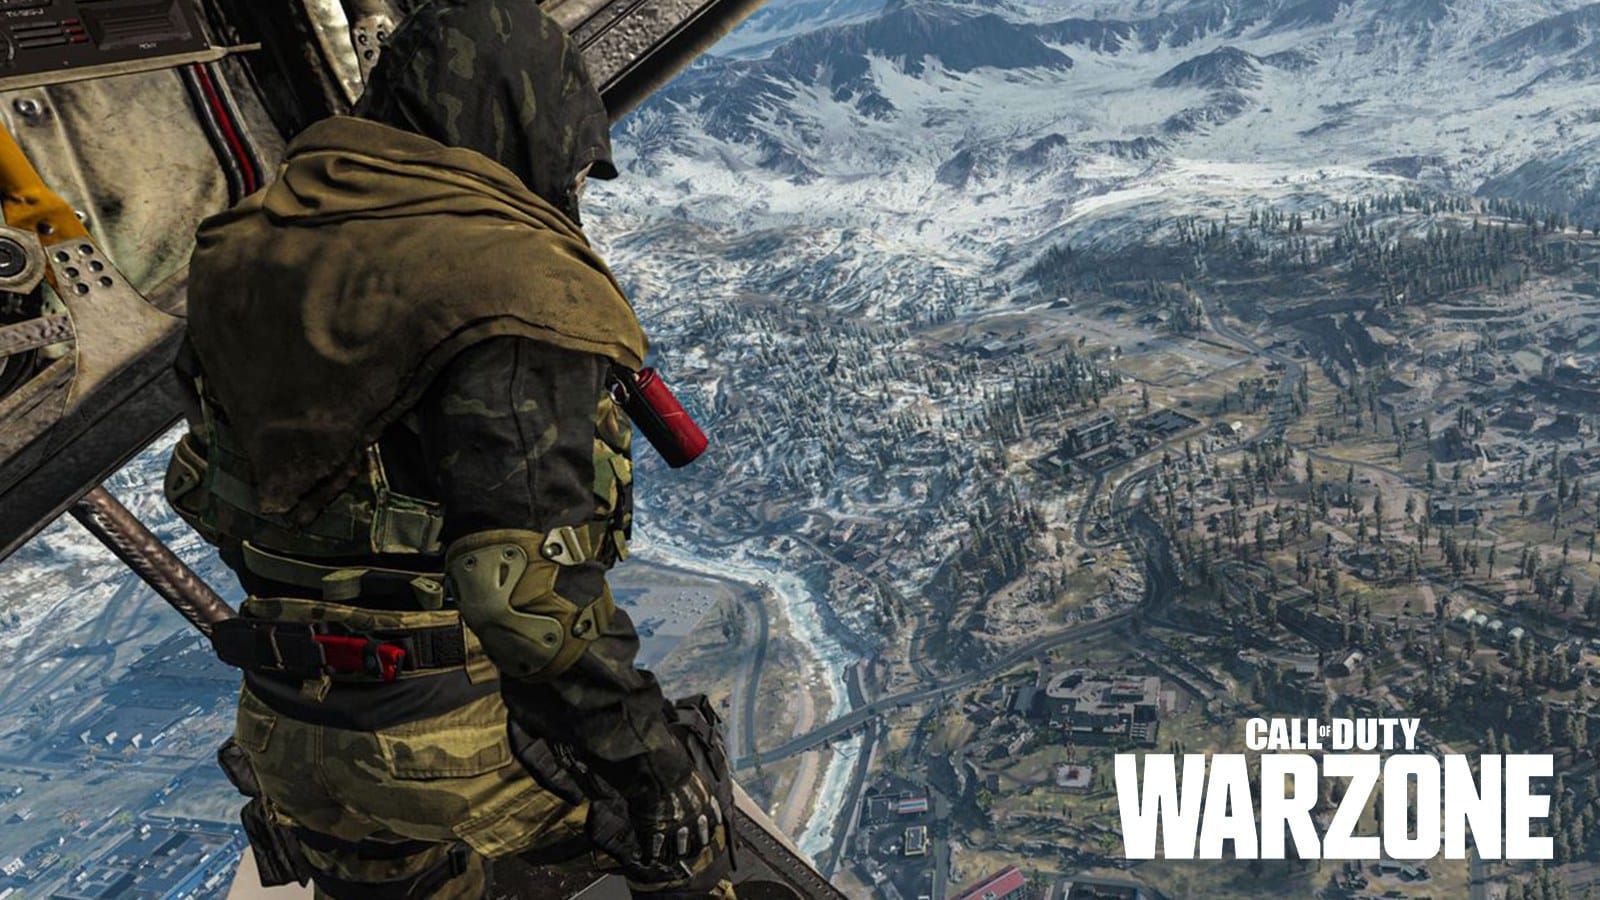 Une fuite affirme que la carte Warzone de Vanguard devrait accueillir plus de joueurs - Dexerto.fr